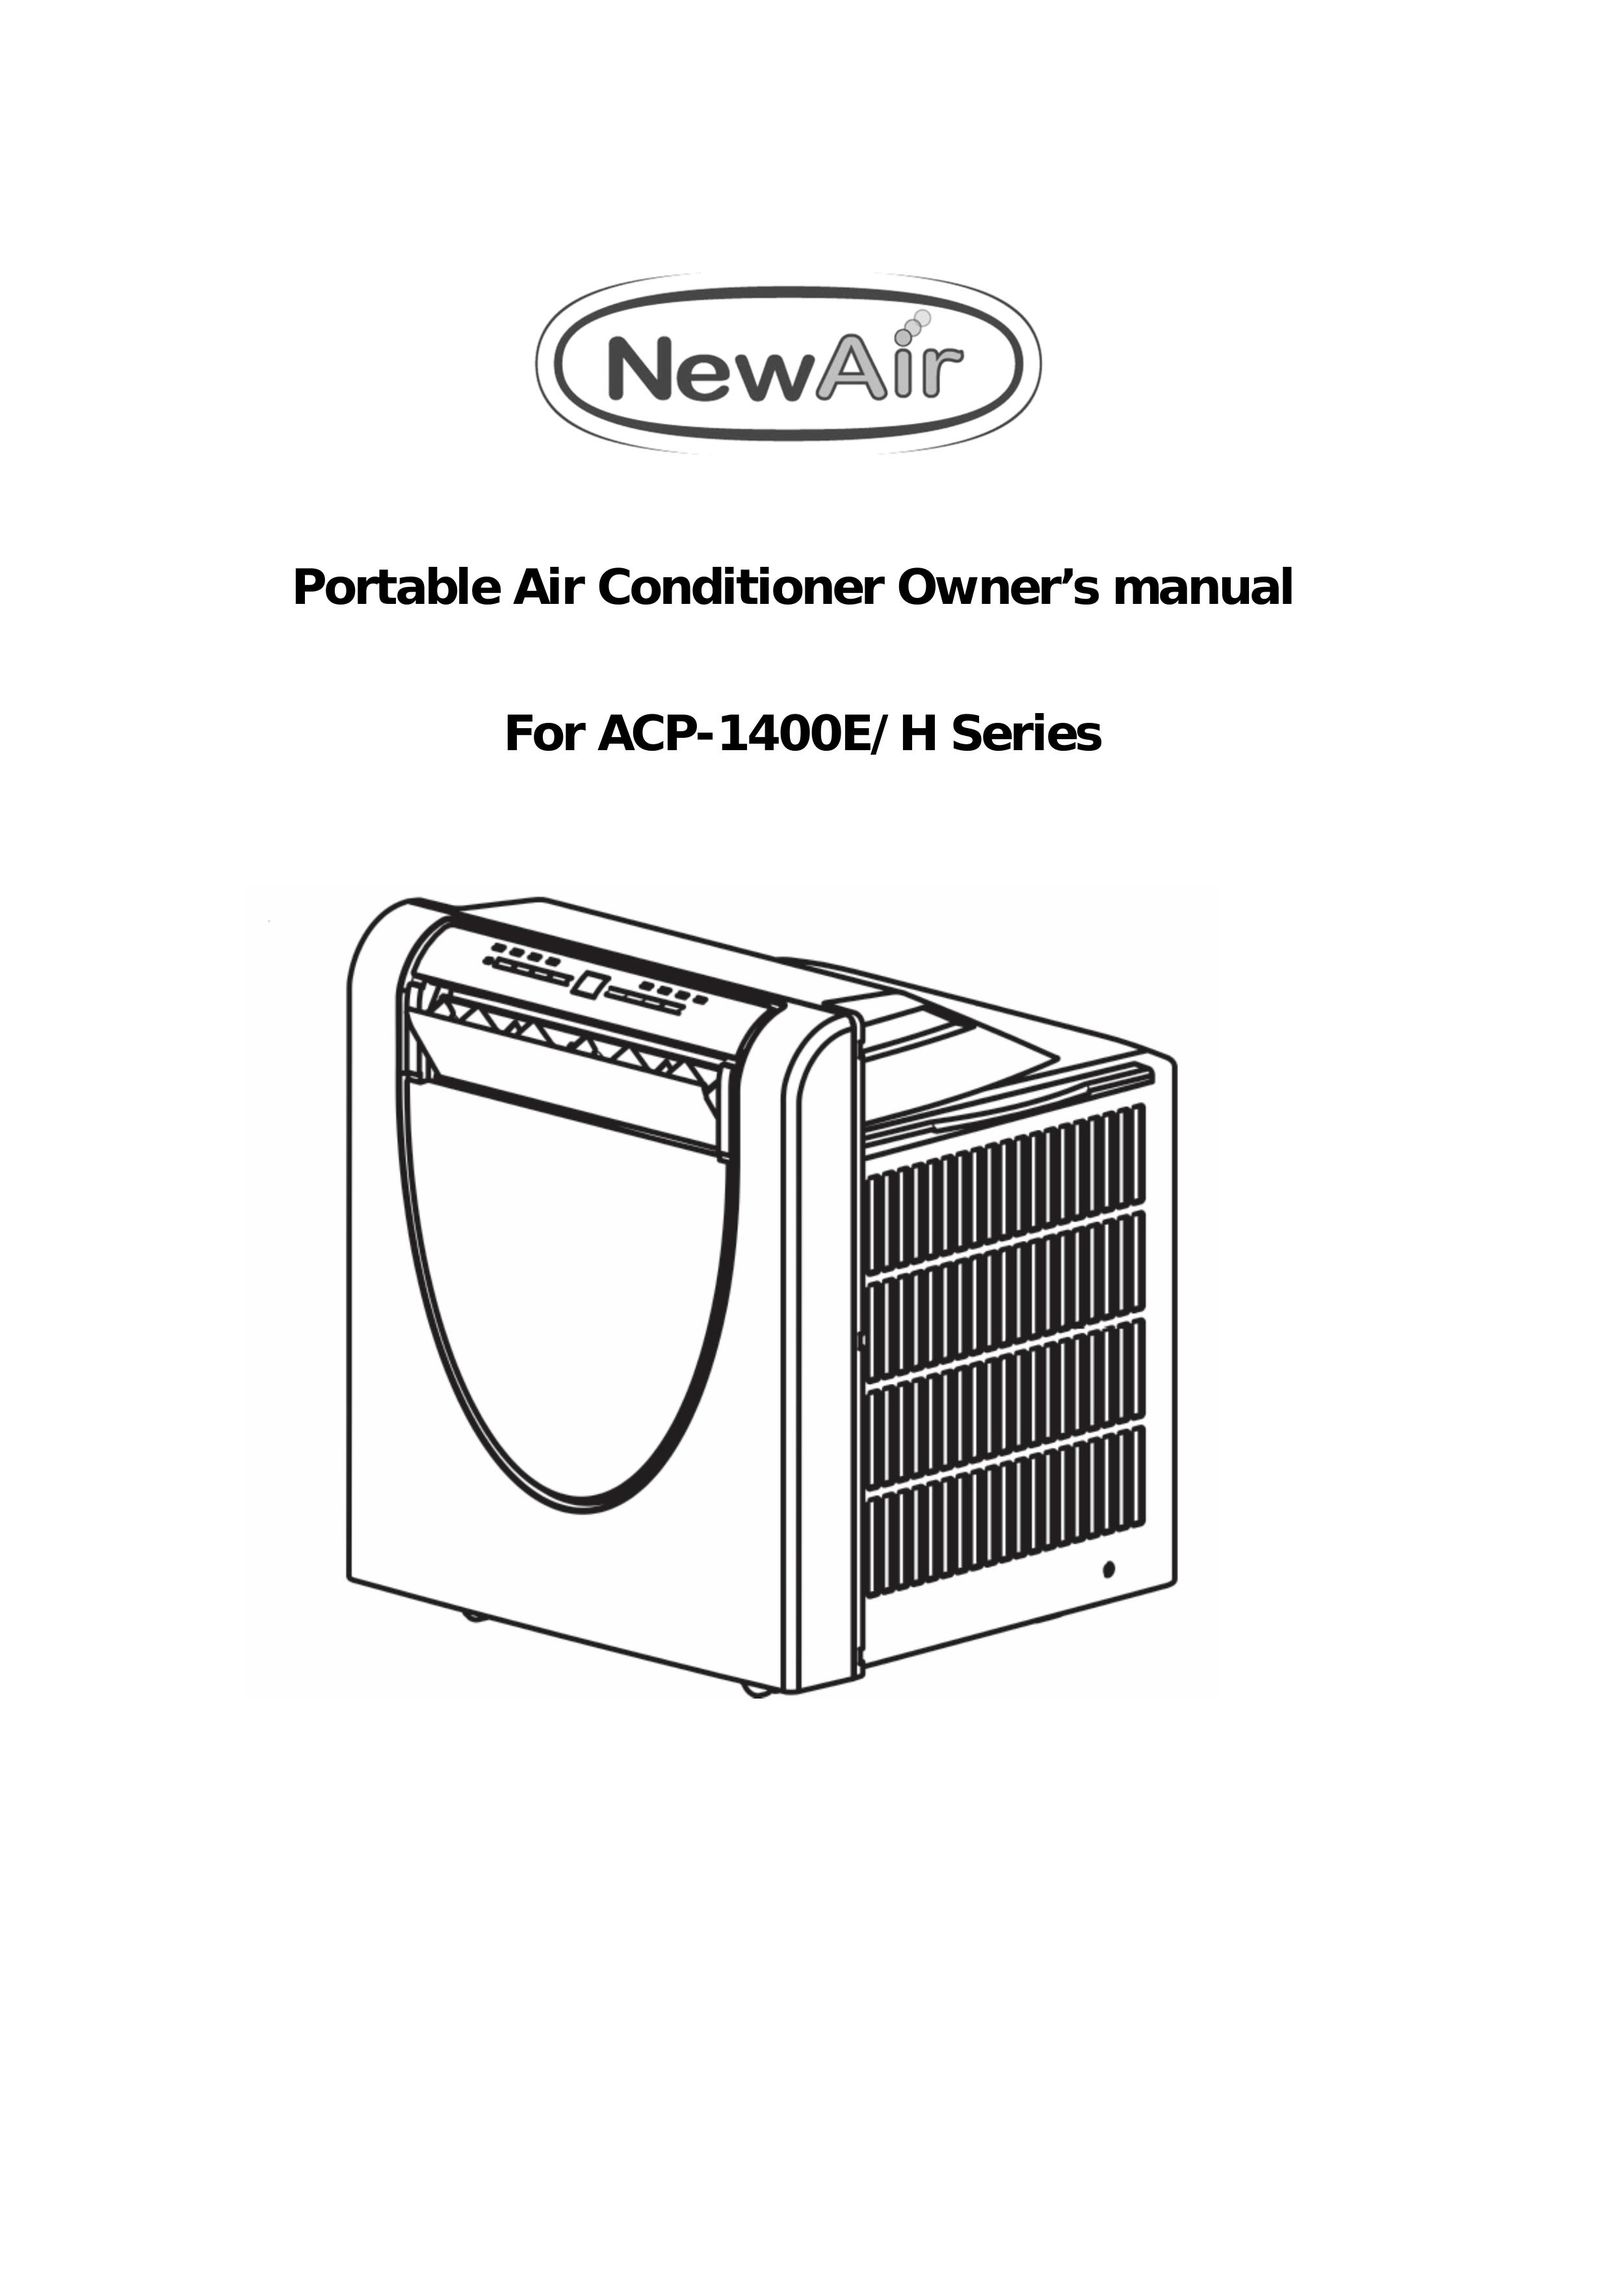 NewAir ACP-1400E Air Conditioner User Manual